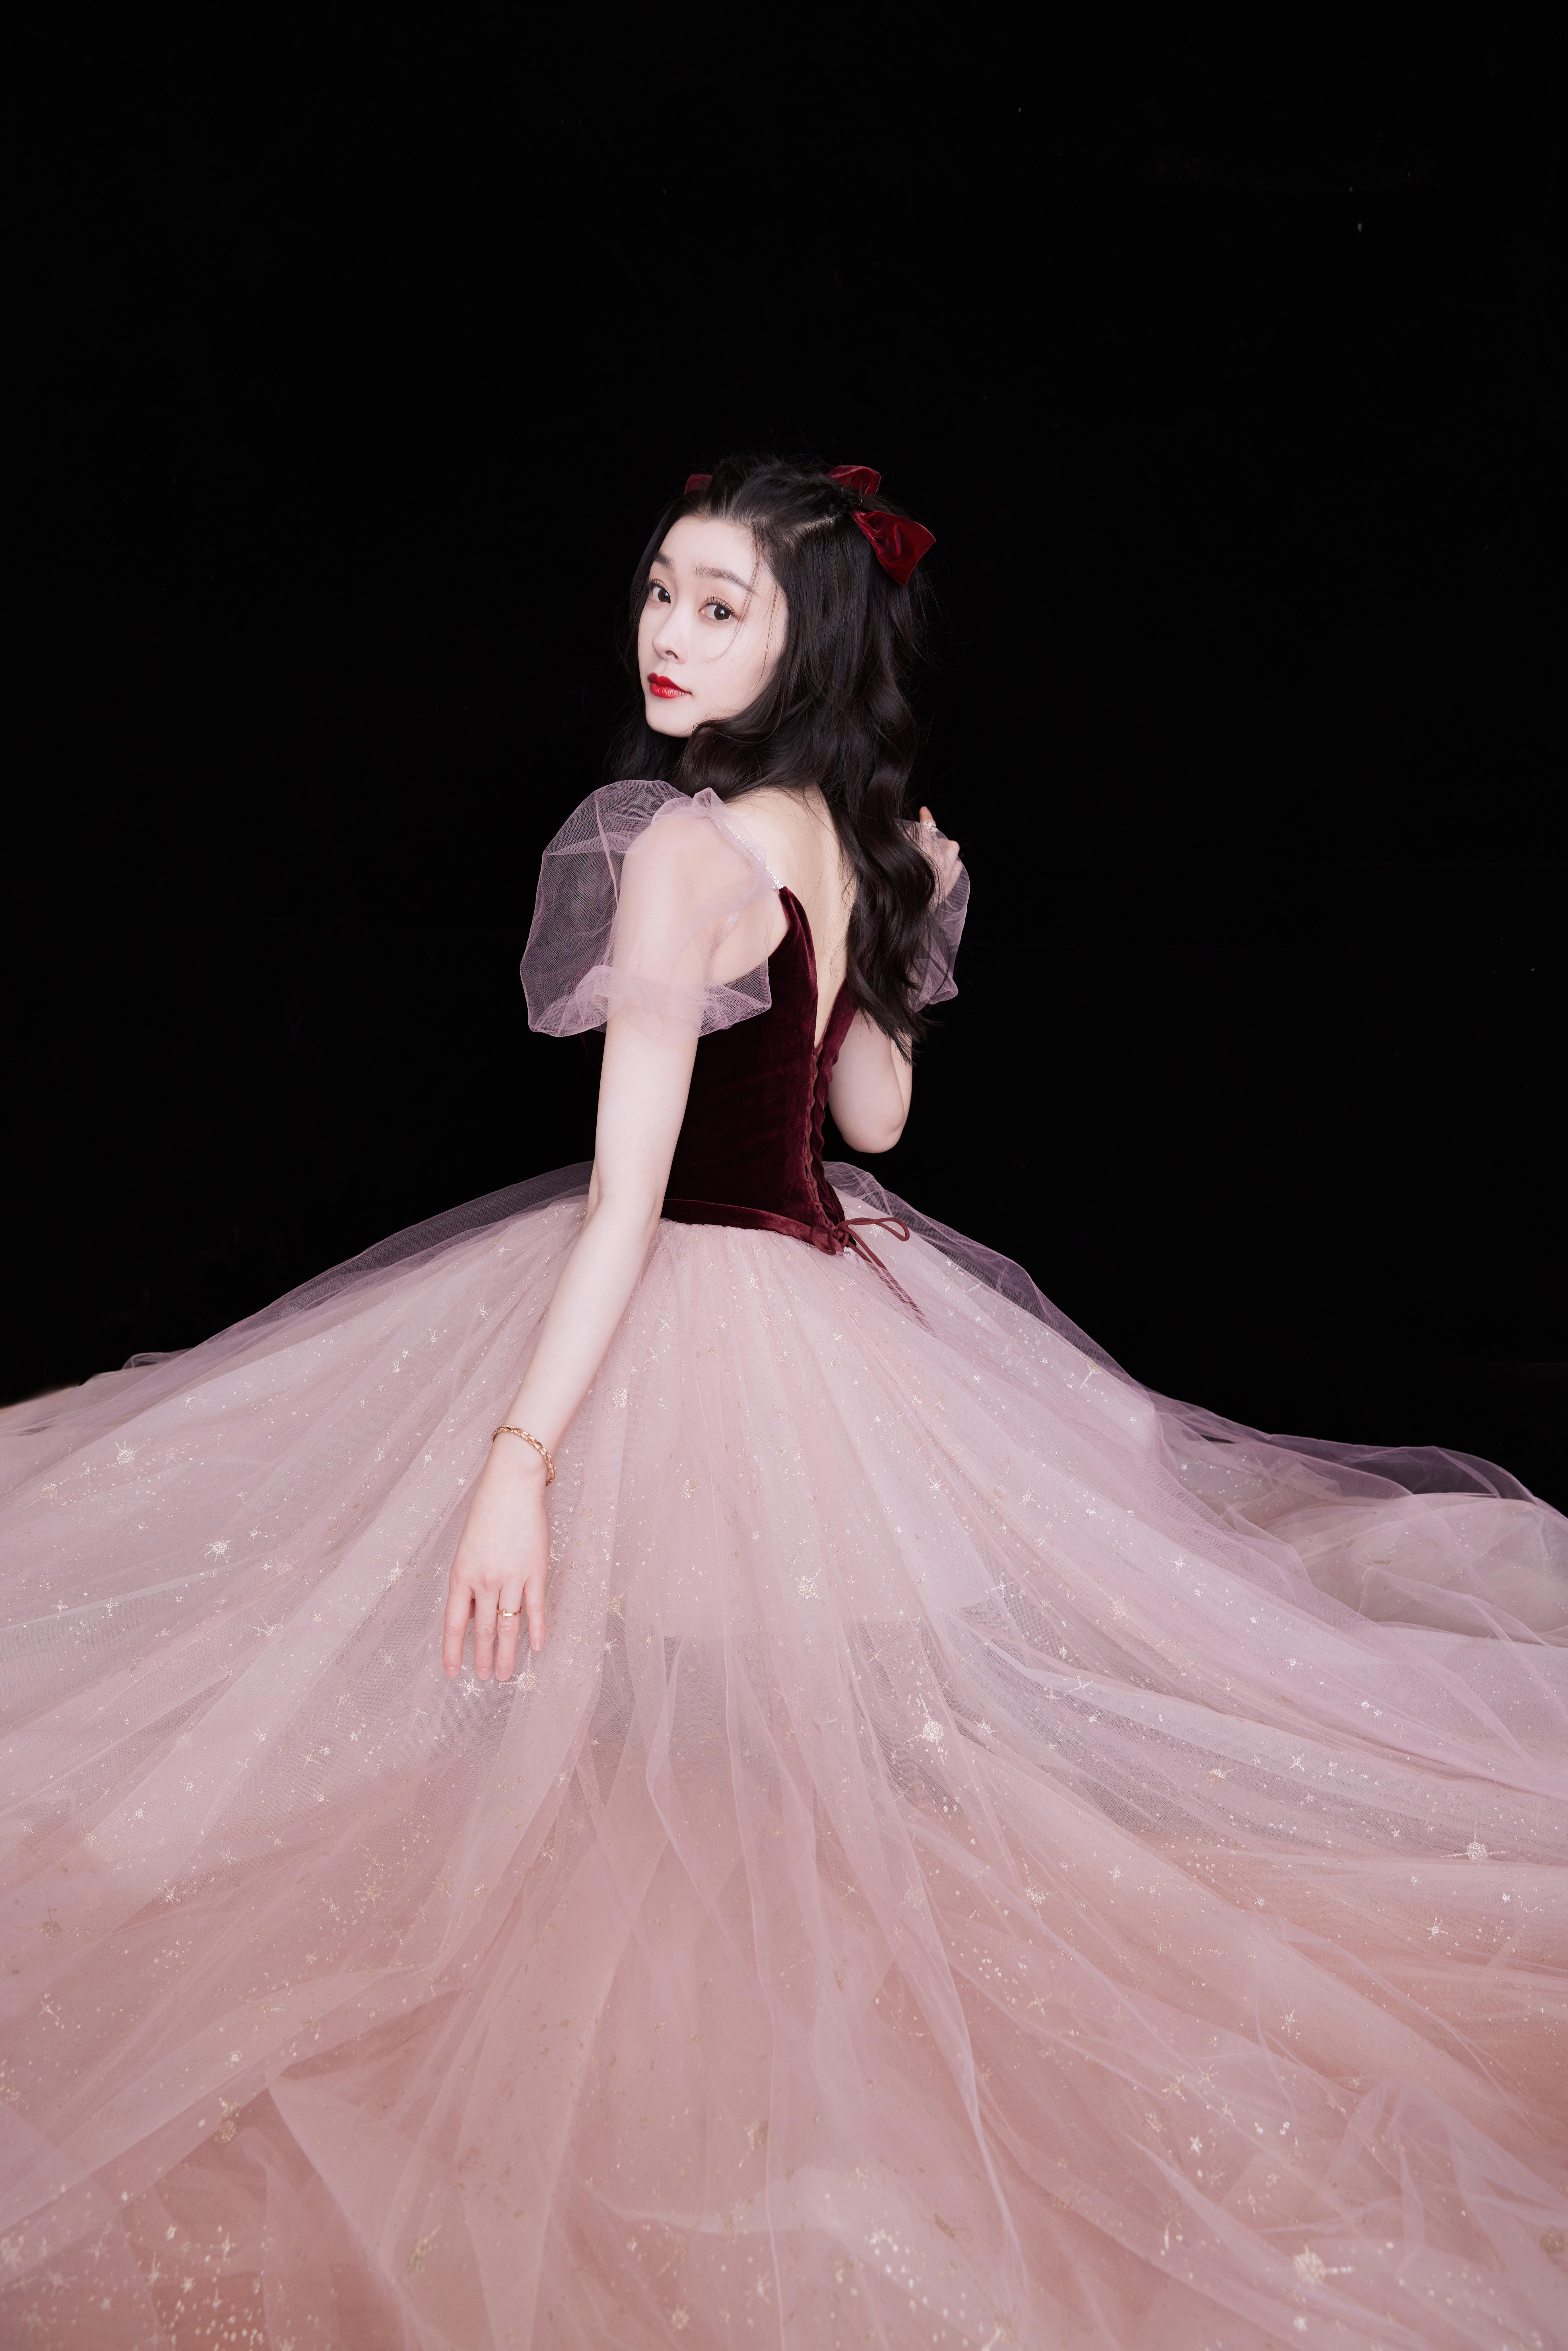 宋轶跨年公主风造型写真释出 着粉色泡泡袖纱裙可爱优雅,9